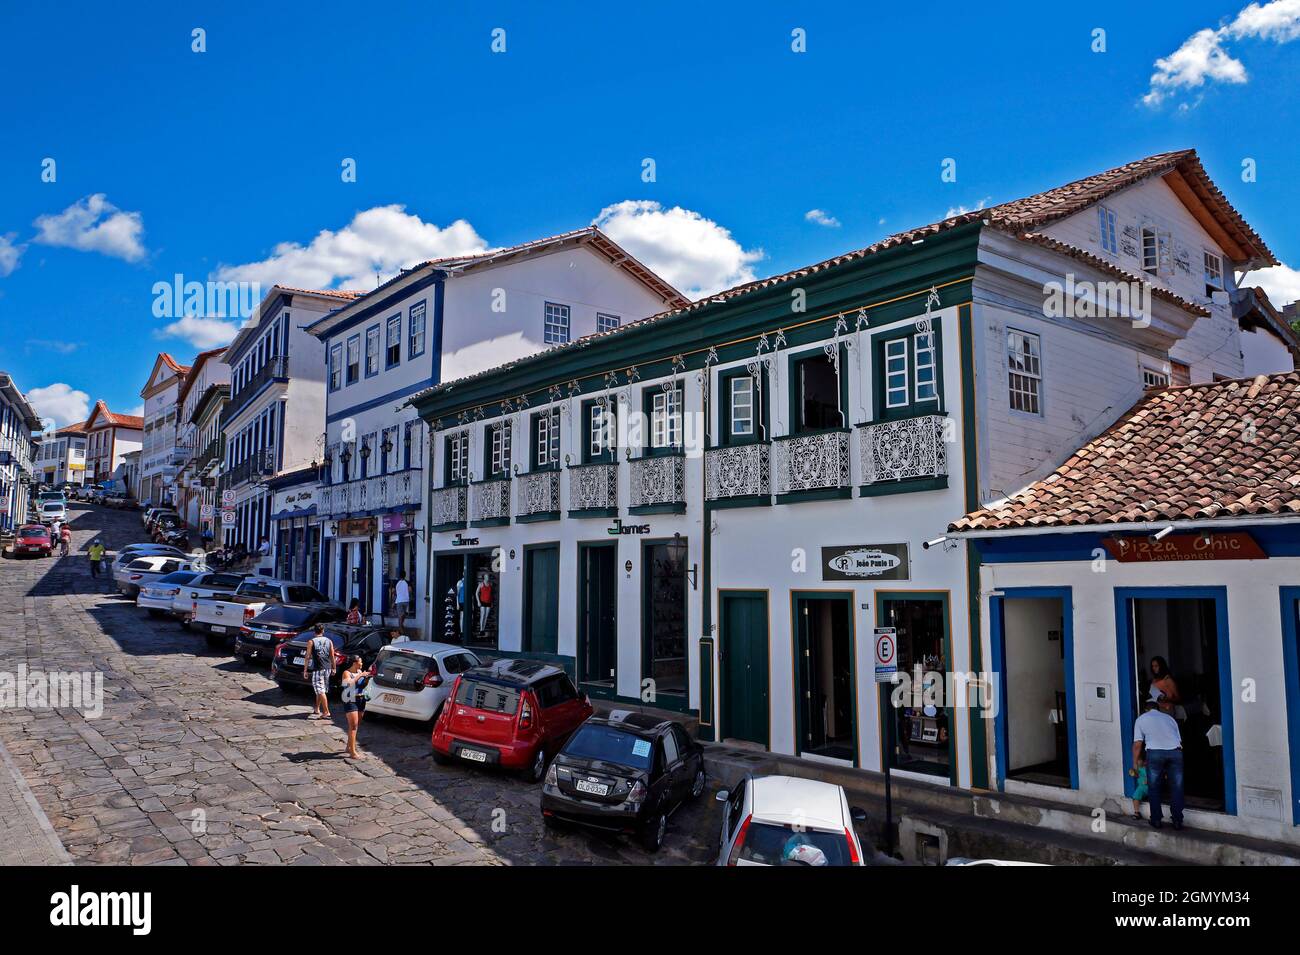 DIAMANTINA, MINAS GERAIS, BRASIL - 22 DE ENERO de 2019: Calle típica en el centro histórico de la ciudad Foto de stock